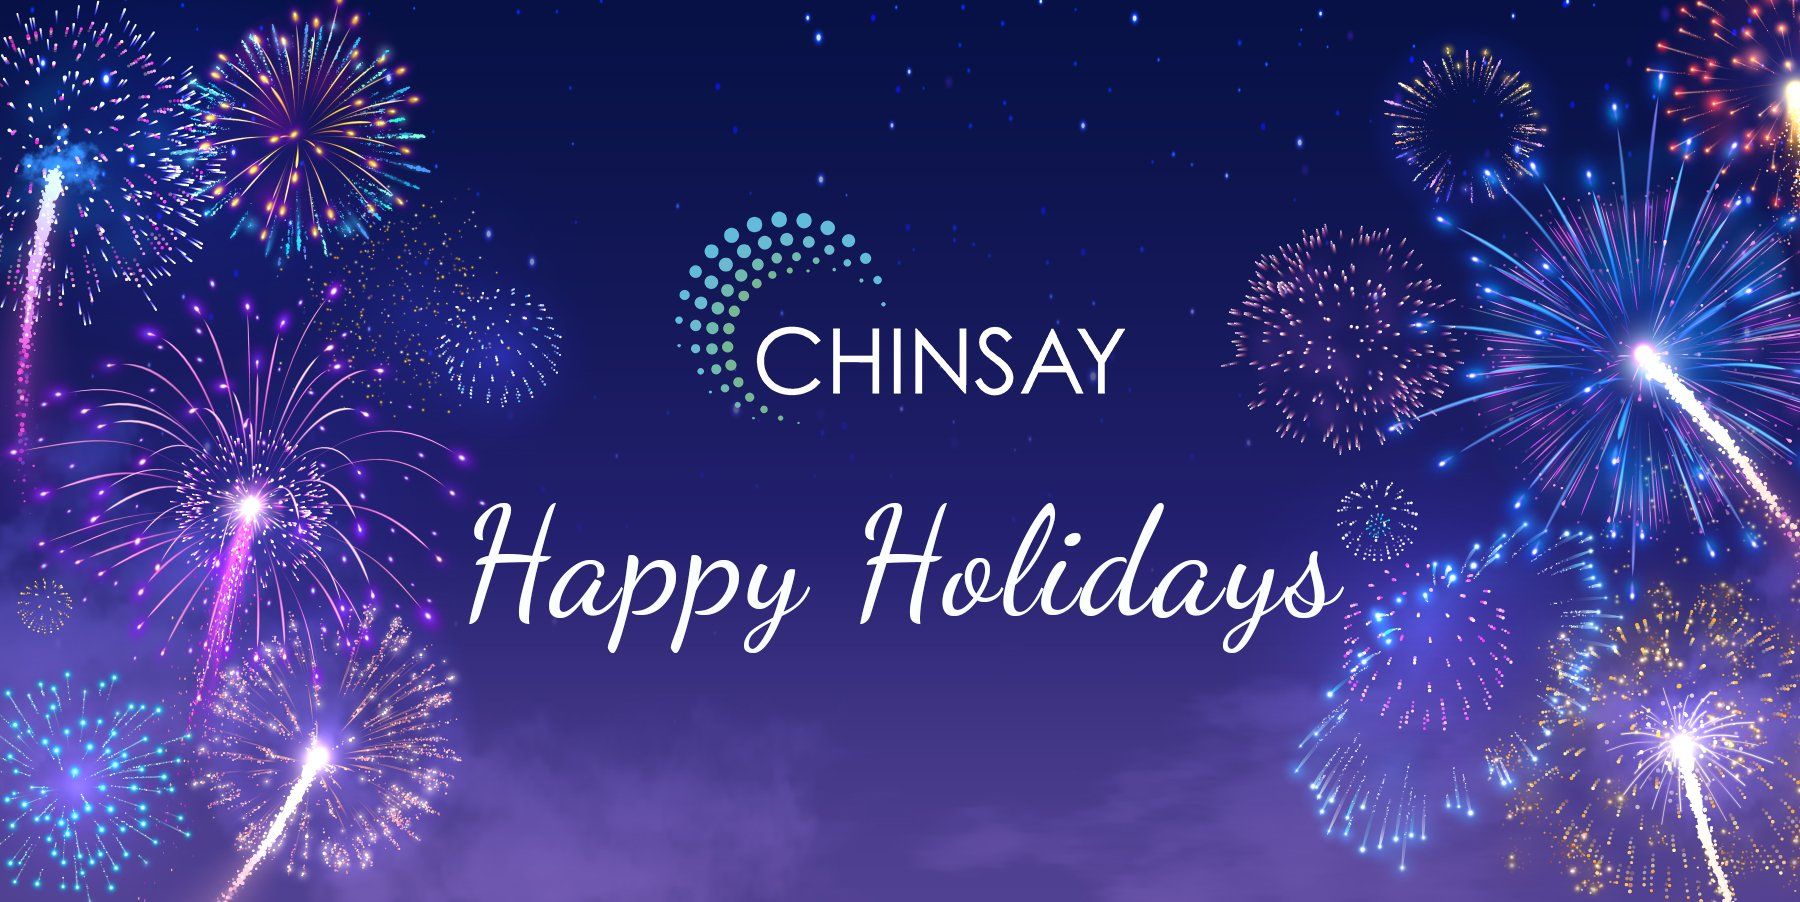 Happy Holidays from Chinsay